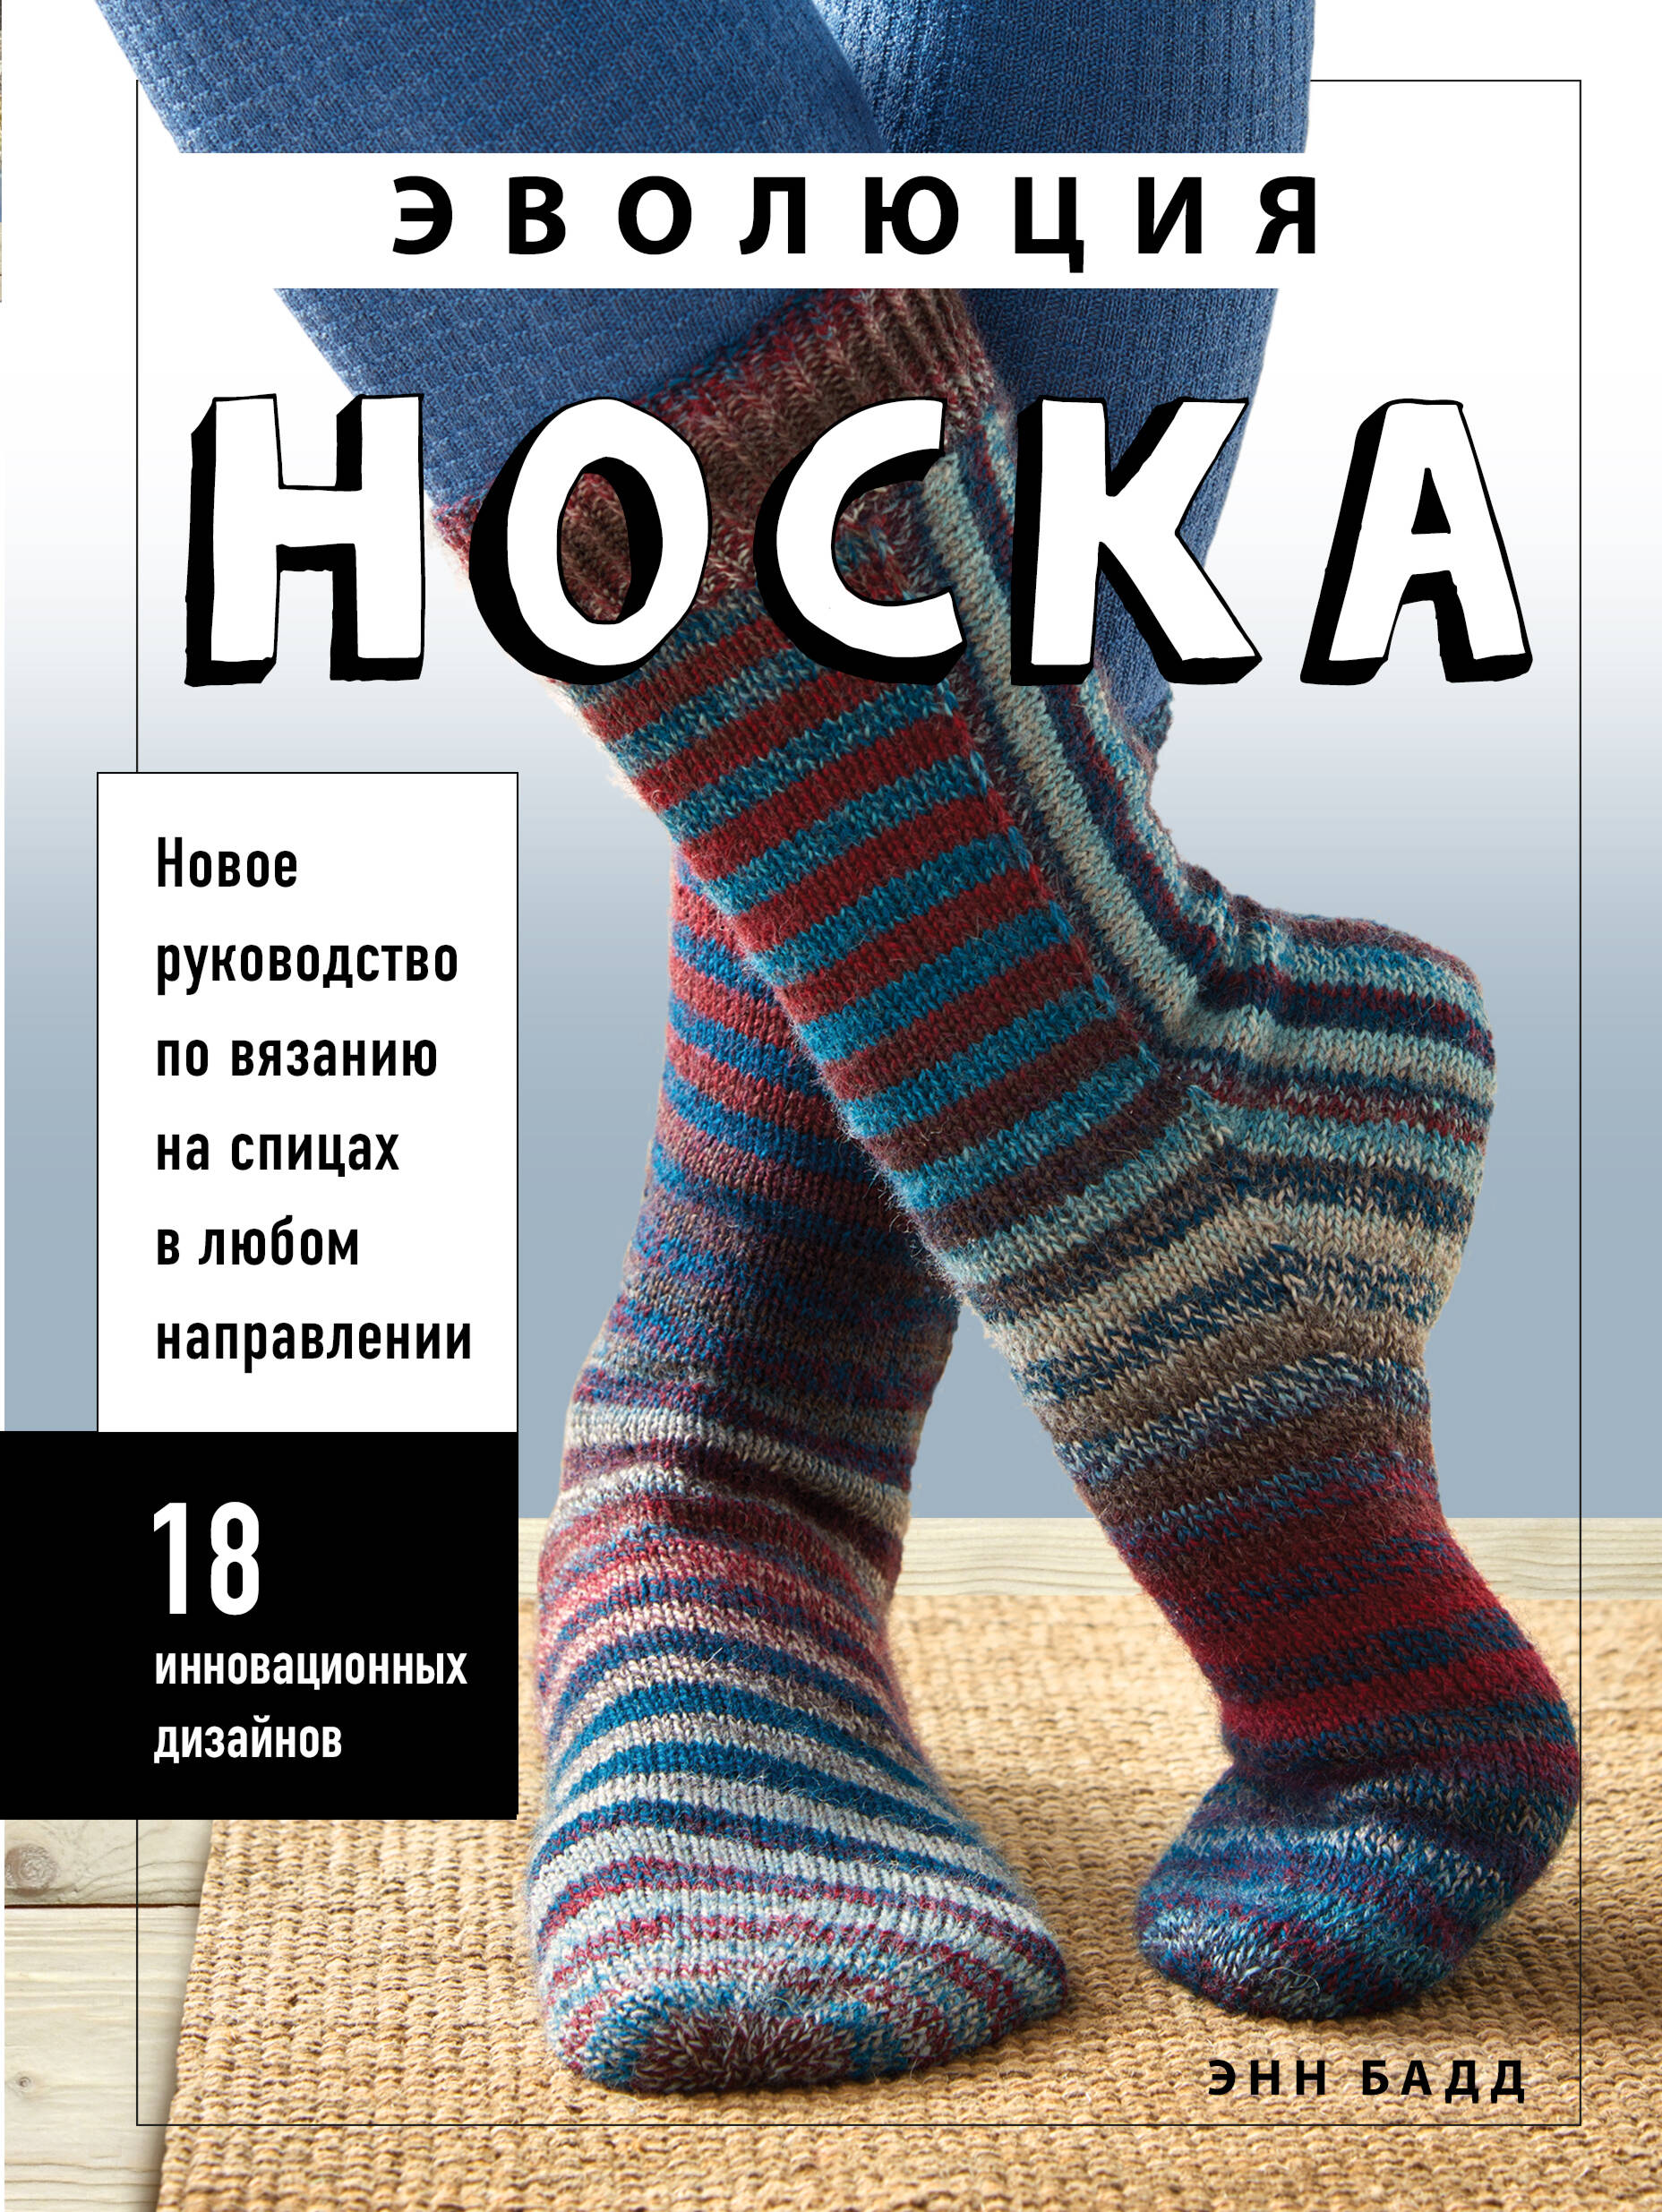 Купить книги про Хобби и Увлечения в Киеве, Украине | enotbook